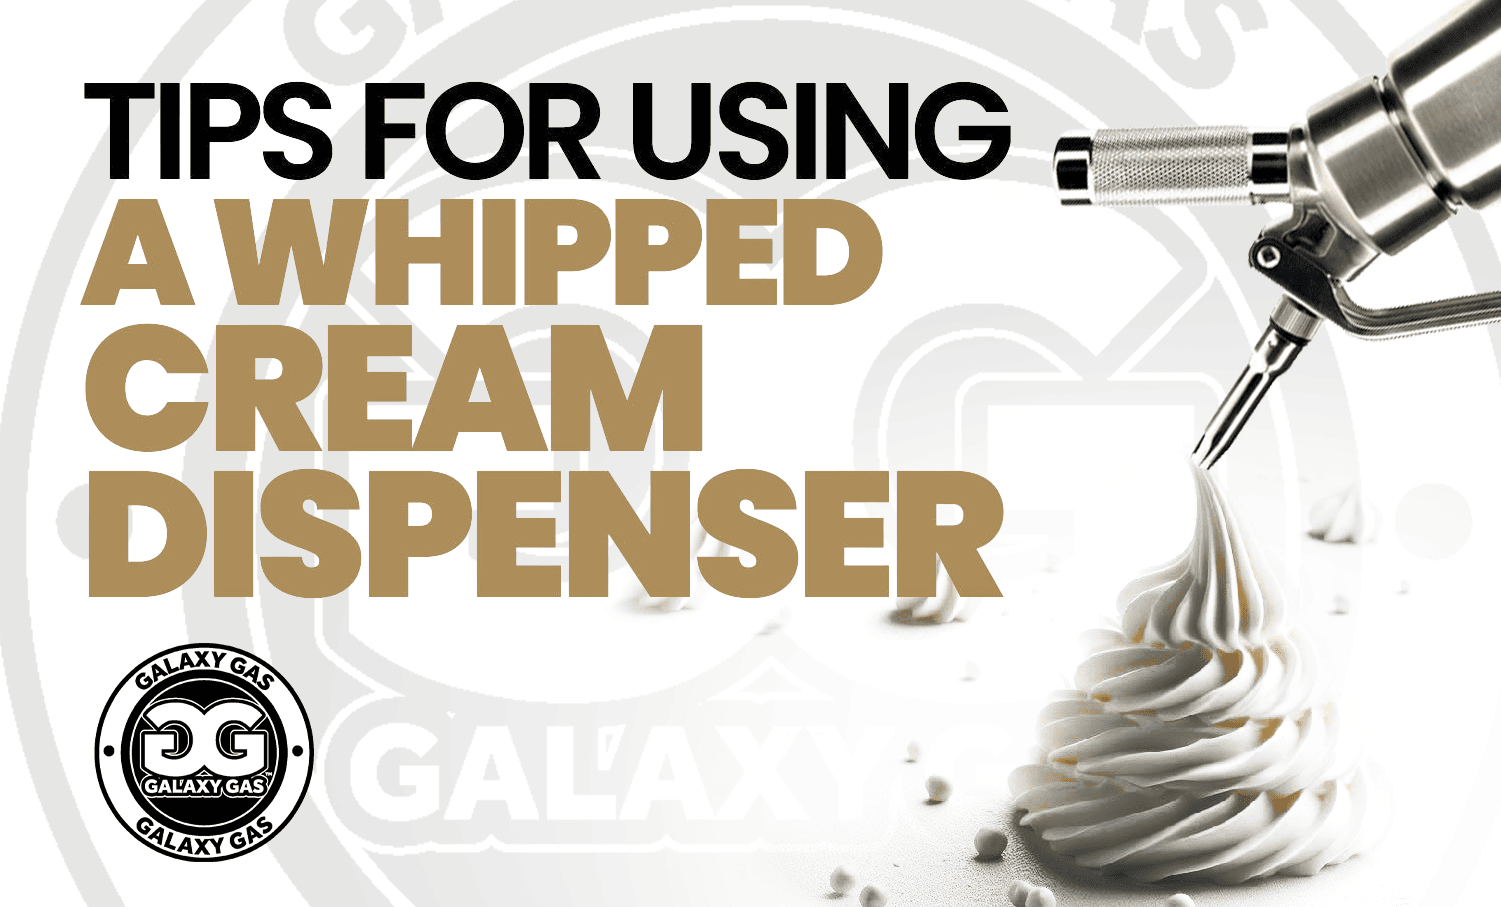 Tips For Using a Whipped Cream Dispenser